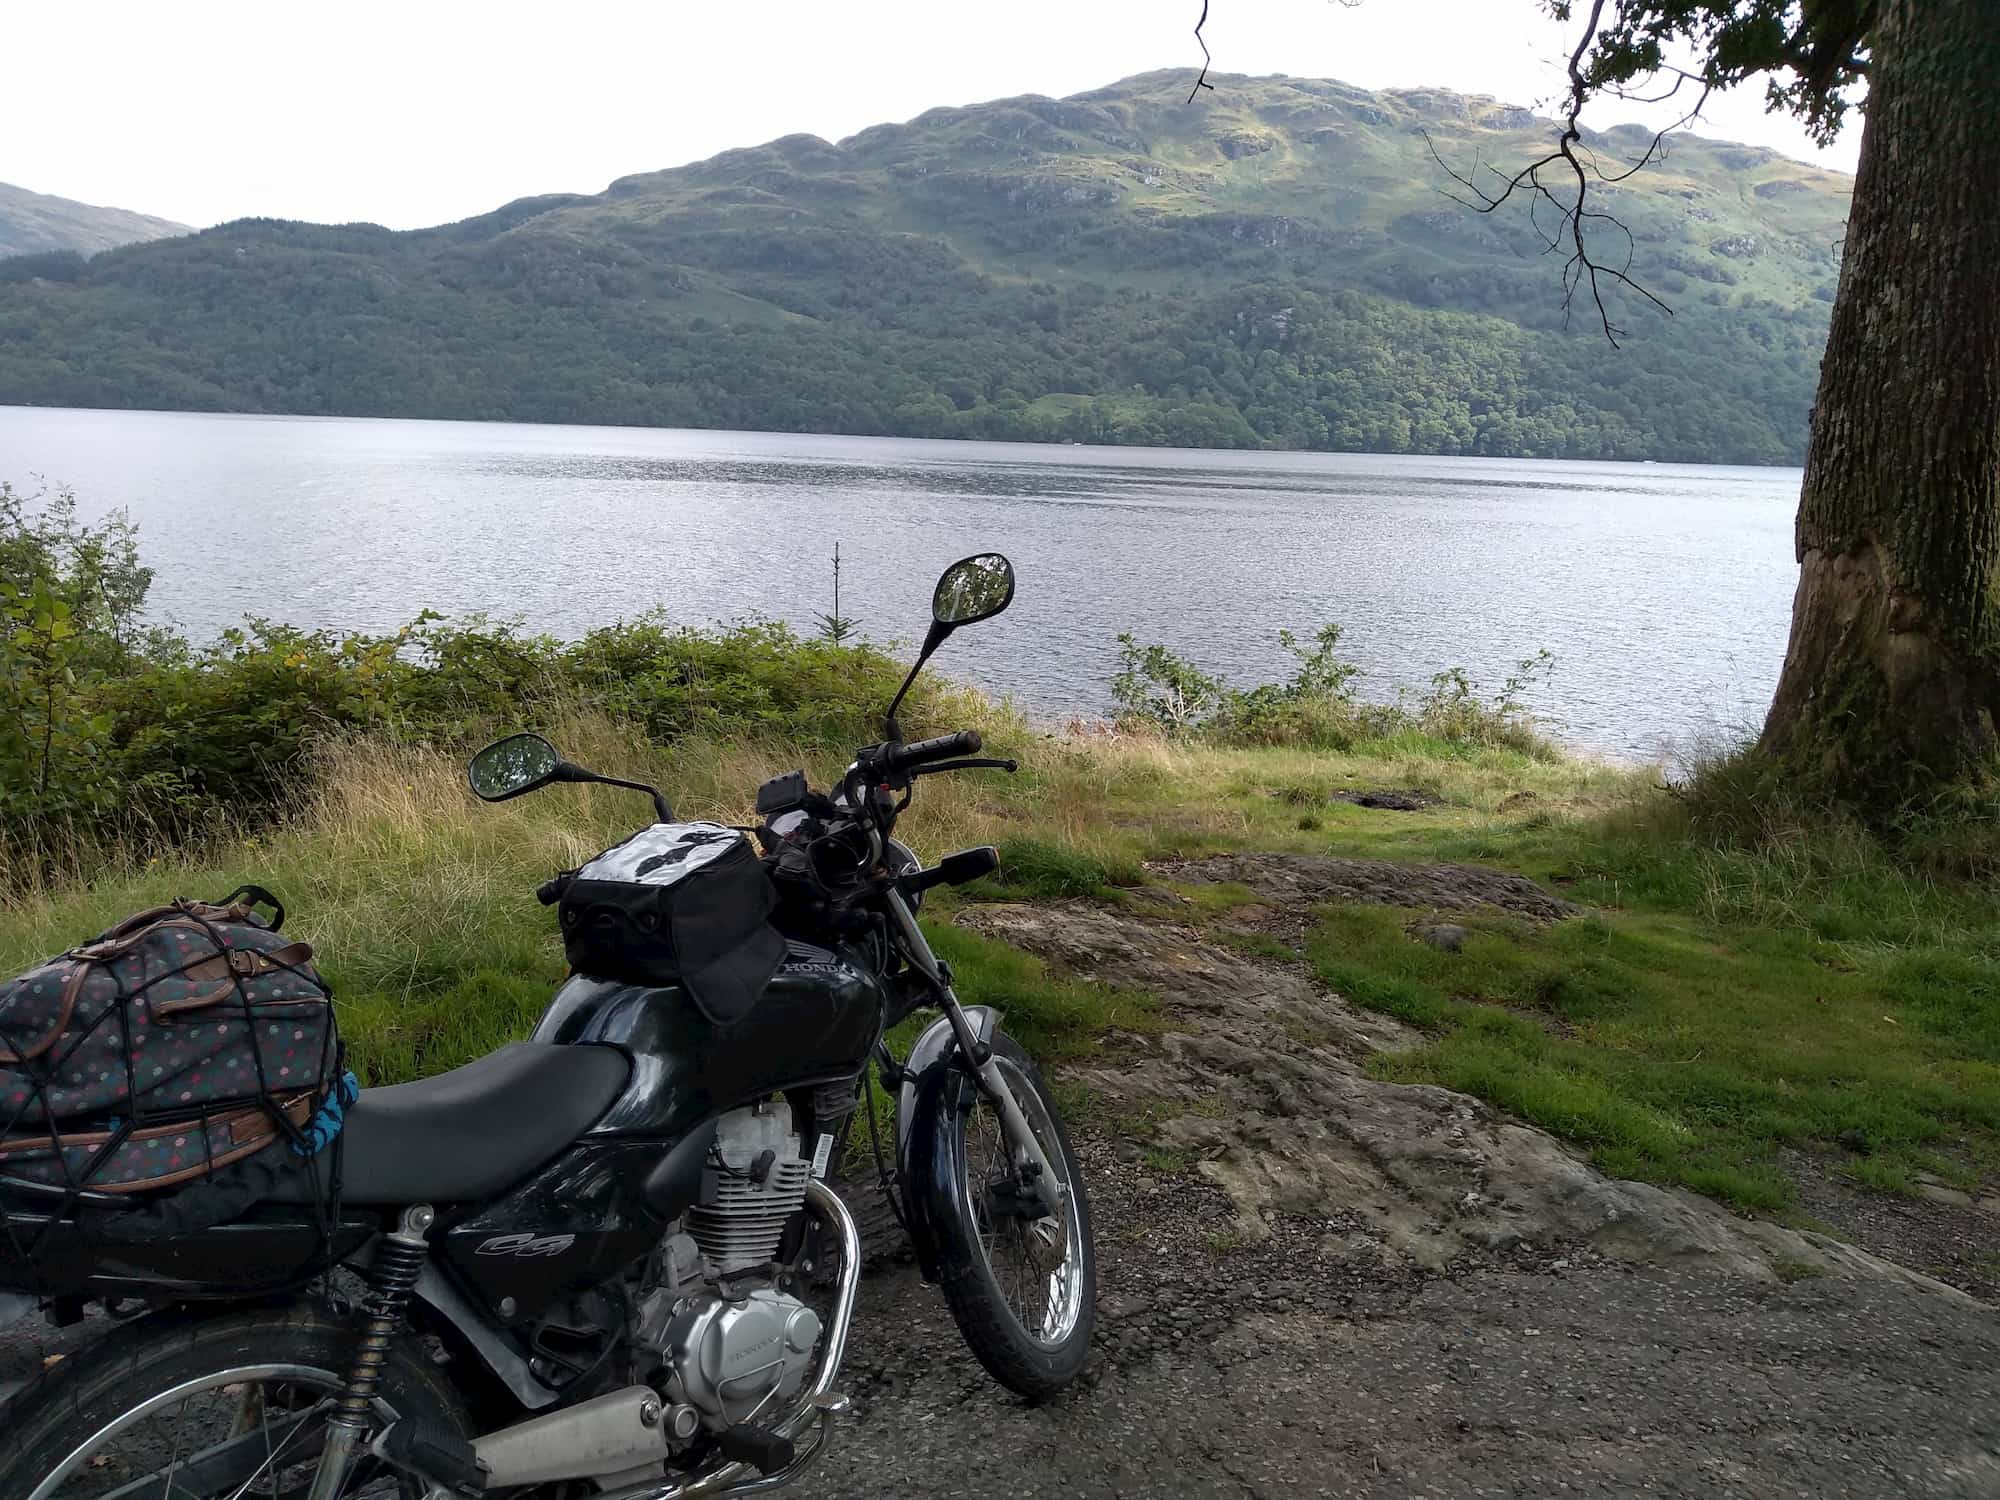 My motorbike parked up next to Loch Lomond